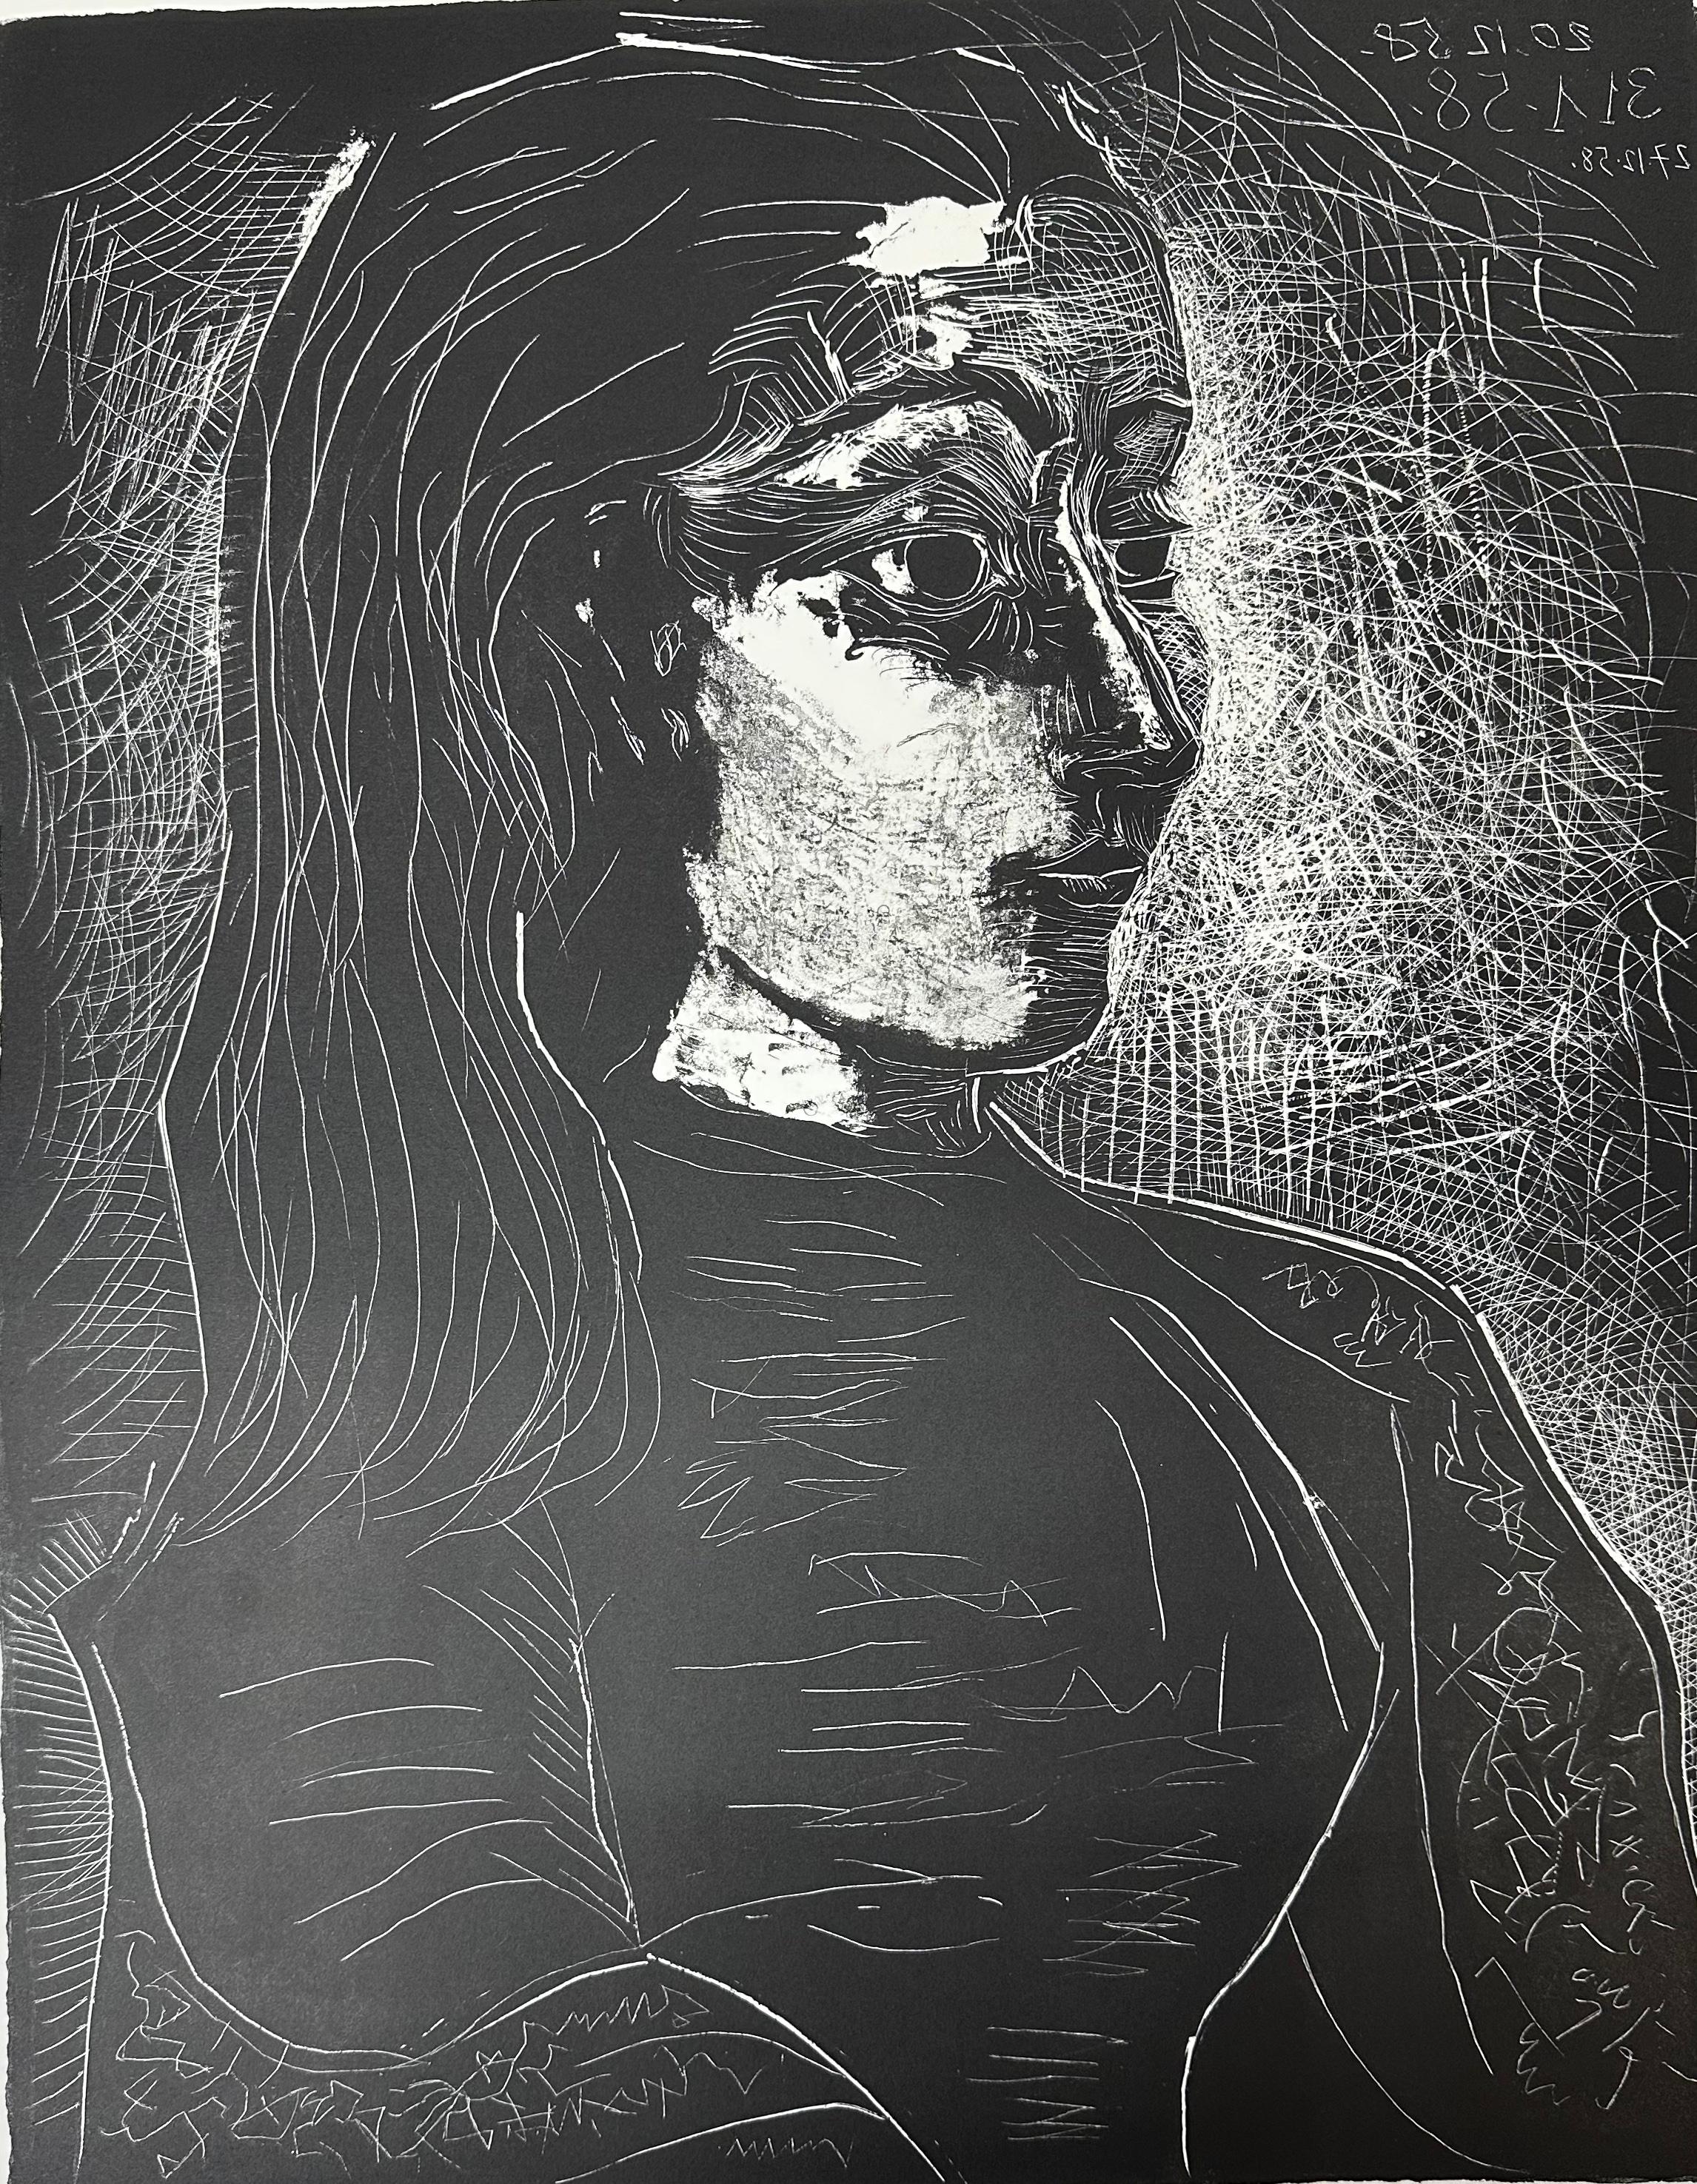 Pablo Picasso
"Porträt von Jacqueline, rechtes Profil"
Original-Lithographie
Der 3. und letzte Zustand, ausgeführt auf Zink
Handsigniert mit Bleistift, nummeriert 21/50 aus der Auflage von 50 Stück
Papierformat: 28 x 19,75 Zoll
Bildgröße: 22 x 17,25